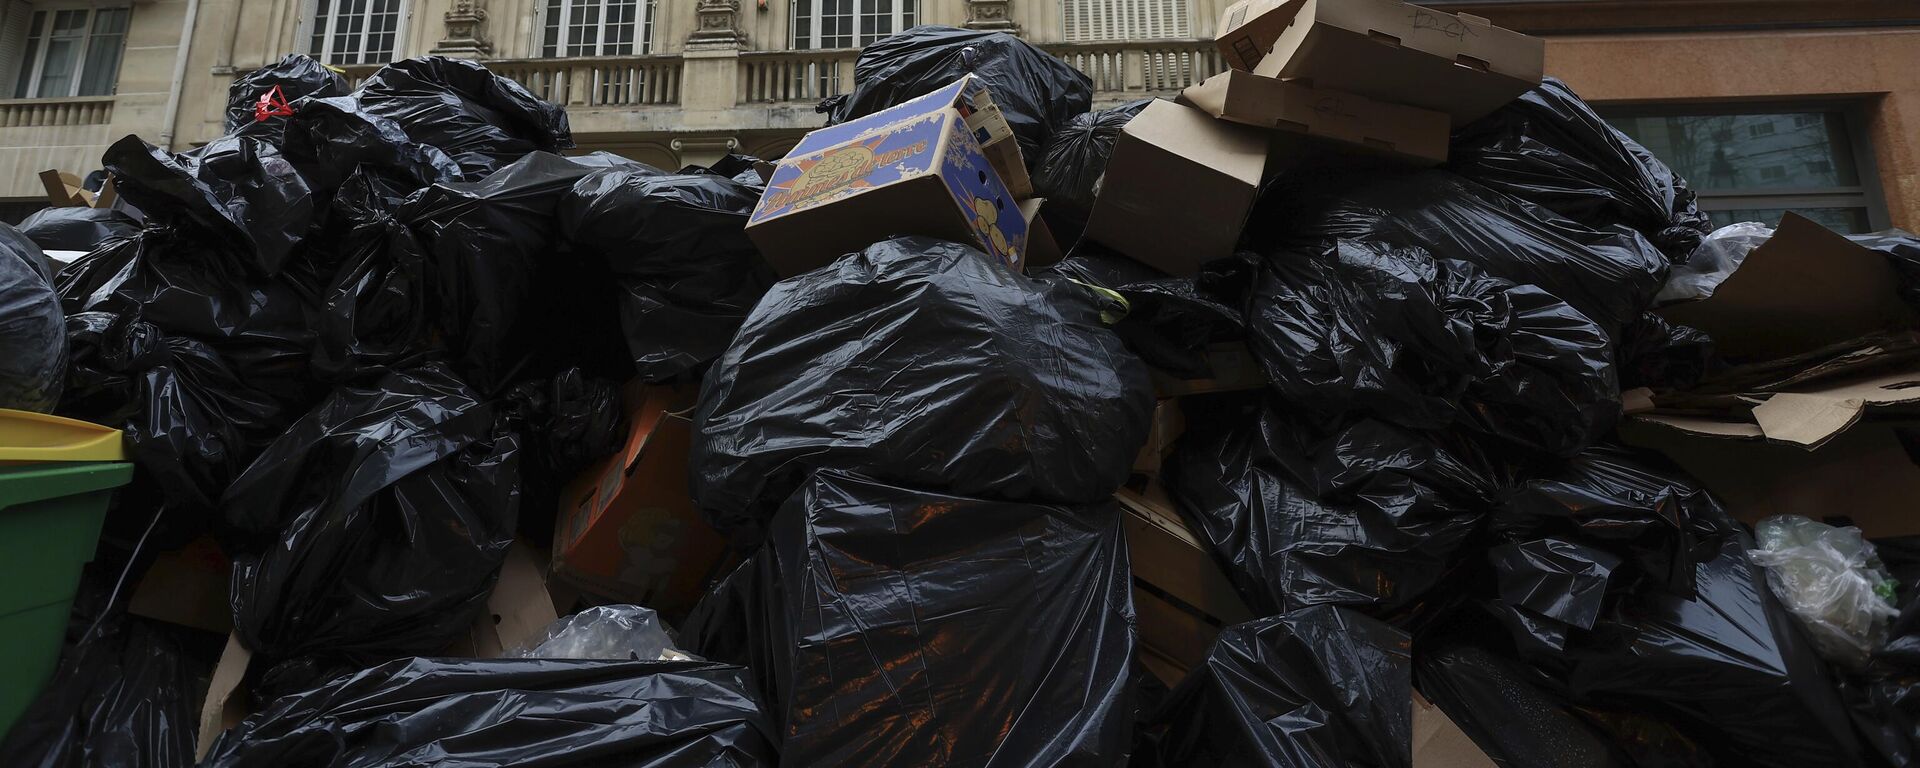 Fransa'daki emeklilik reformu protestoları kapsamında Paris'teki çöp toplayıcılarının grevi, başkentte binaların girişlerini kapayan çöp dağları oluşmasına yol açtı.  - Sputnik Türkiye, 1920, 21.03.2023